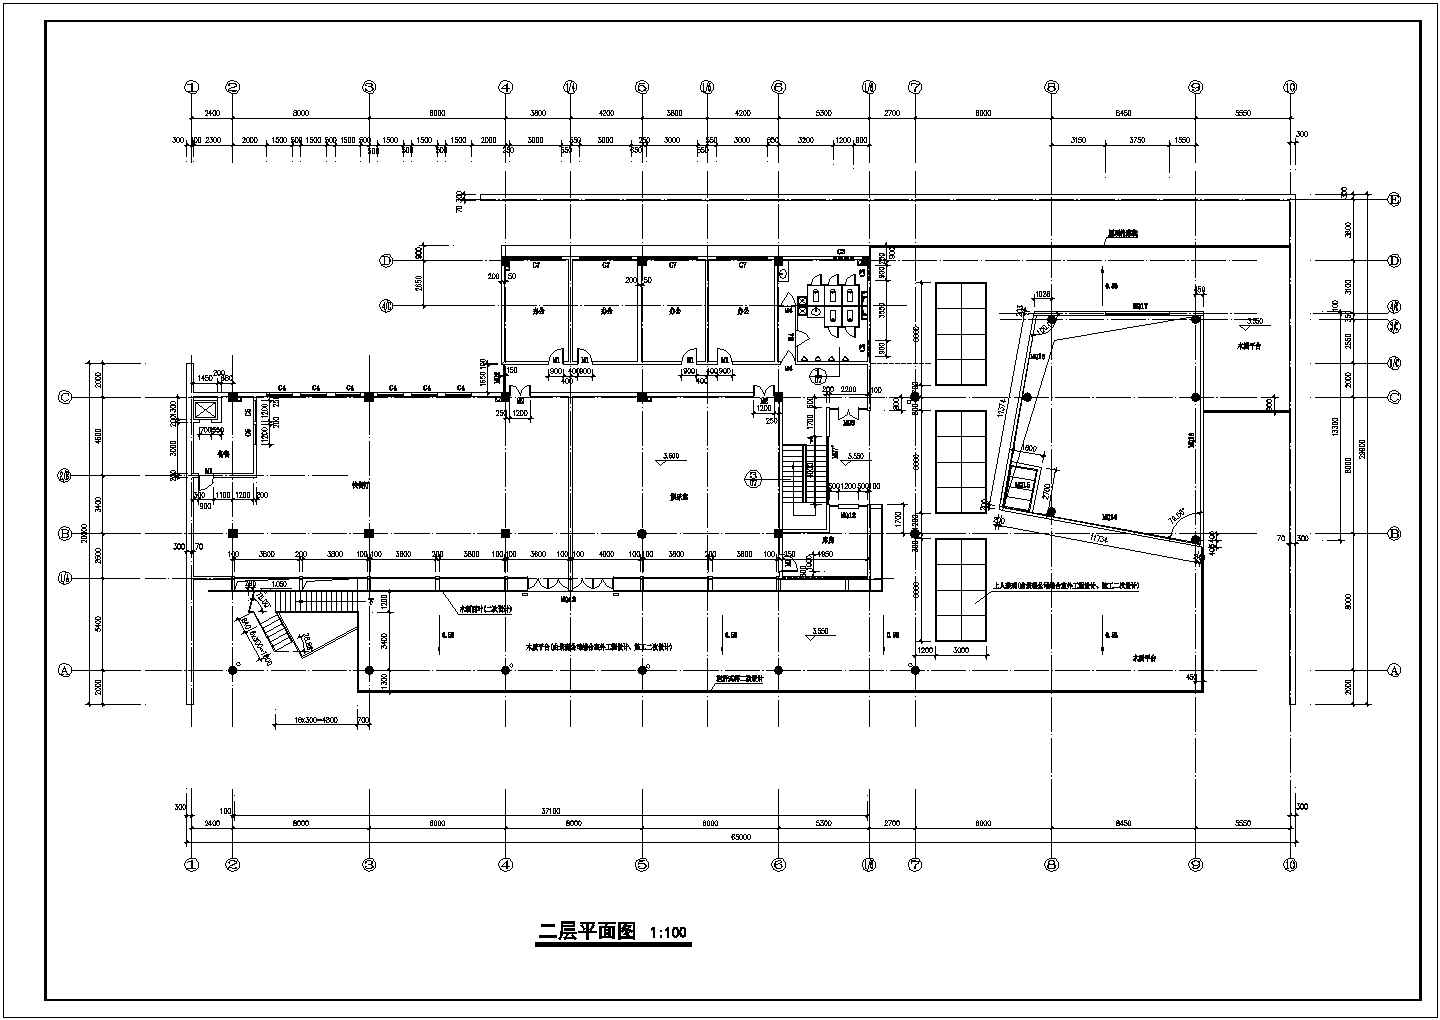 二层超市1516.1平米建筑设计施工图 